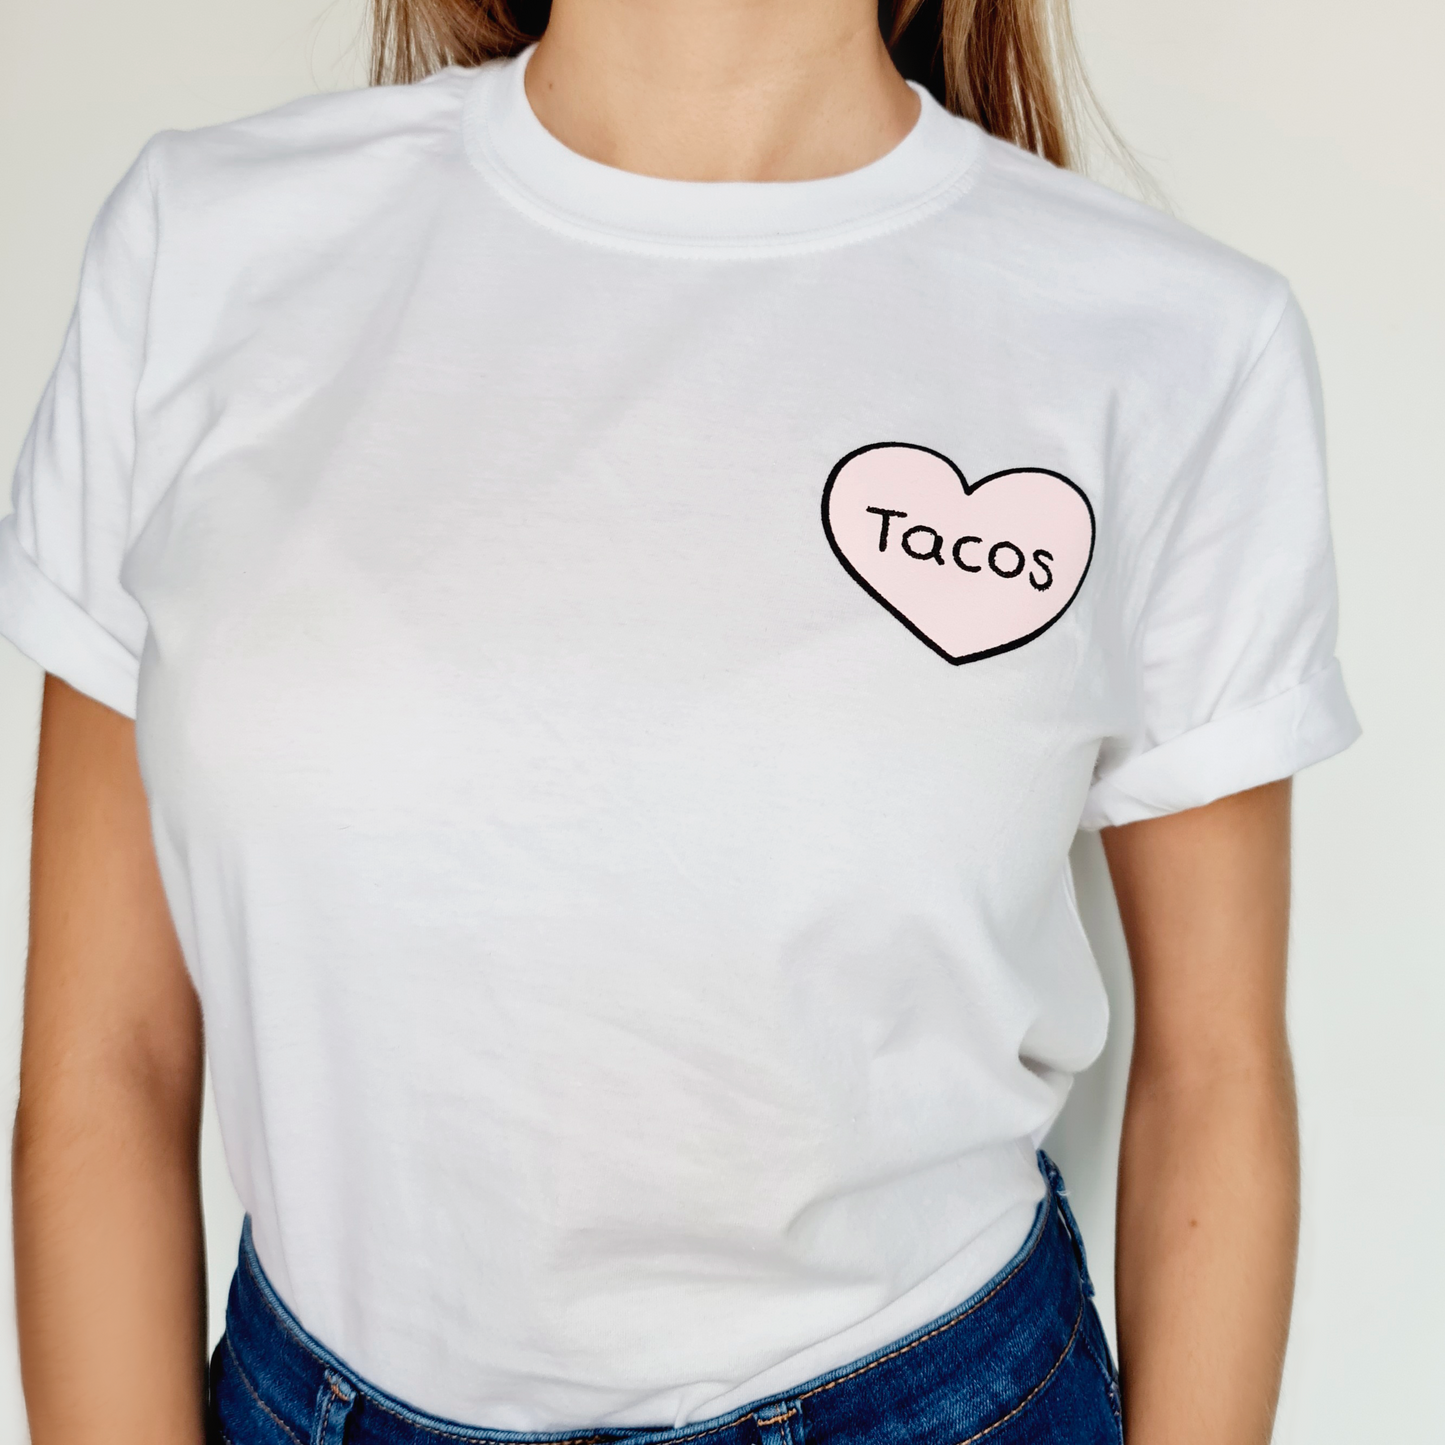 Tshirt "Tacos"